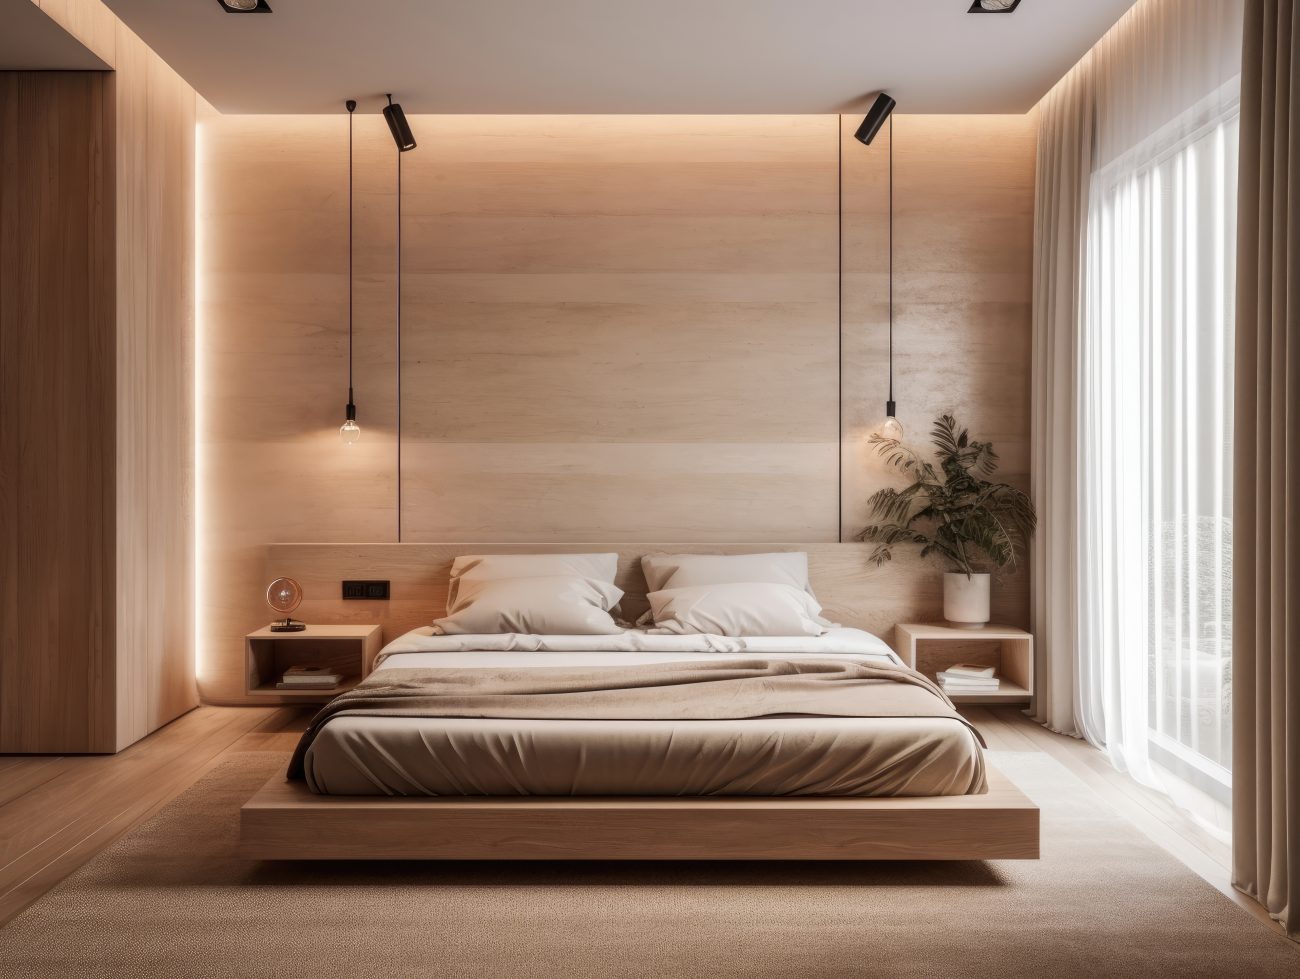 Chambre minimaliste beige avec grand lit sur plateforme, spots halogènes suspendus et éclairage indirect sur le mur marbré